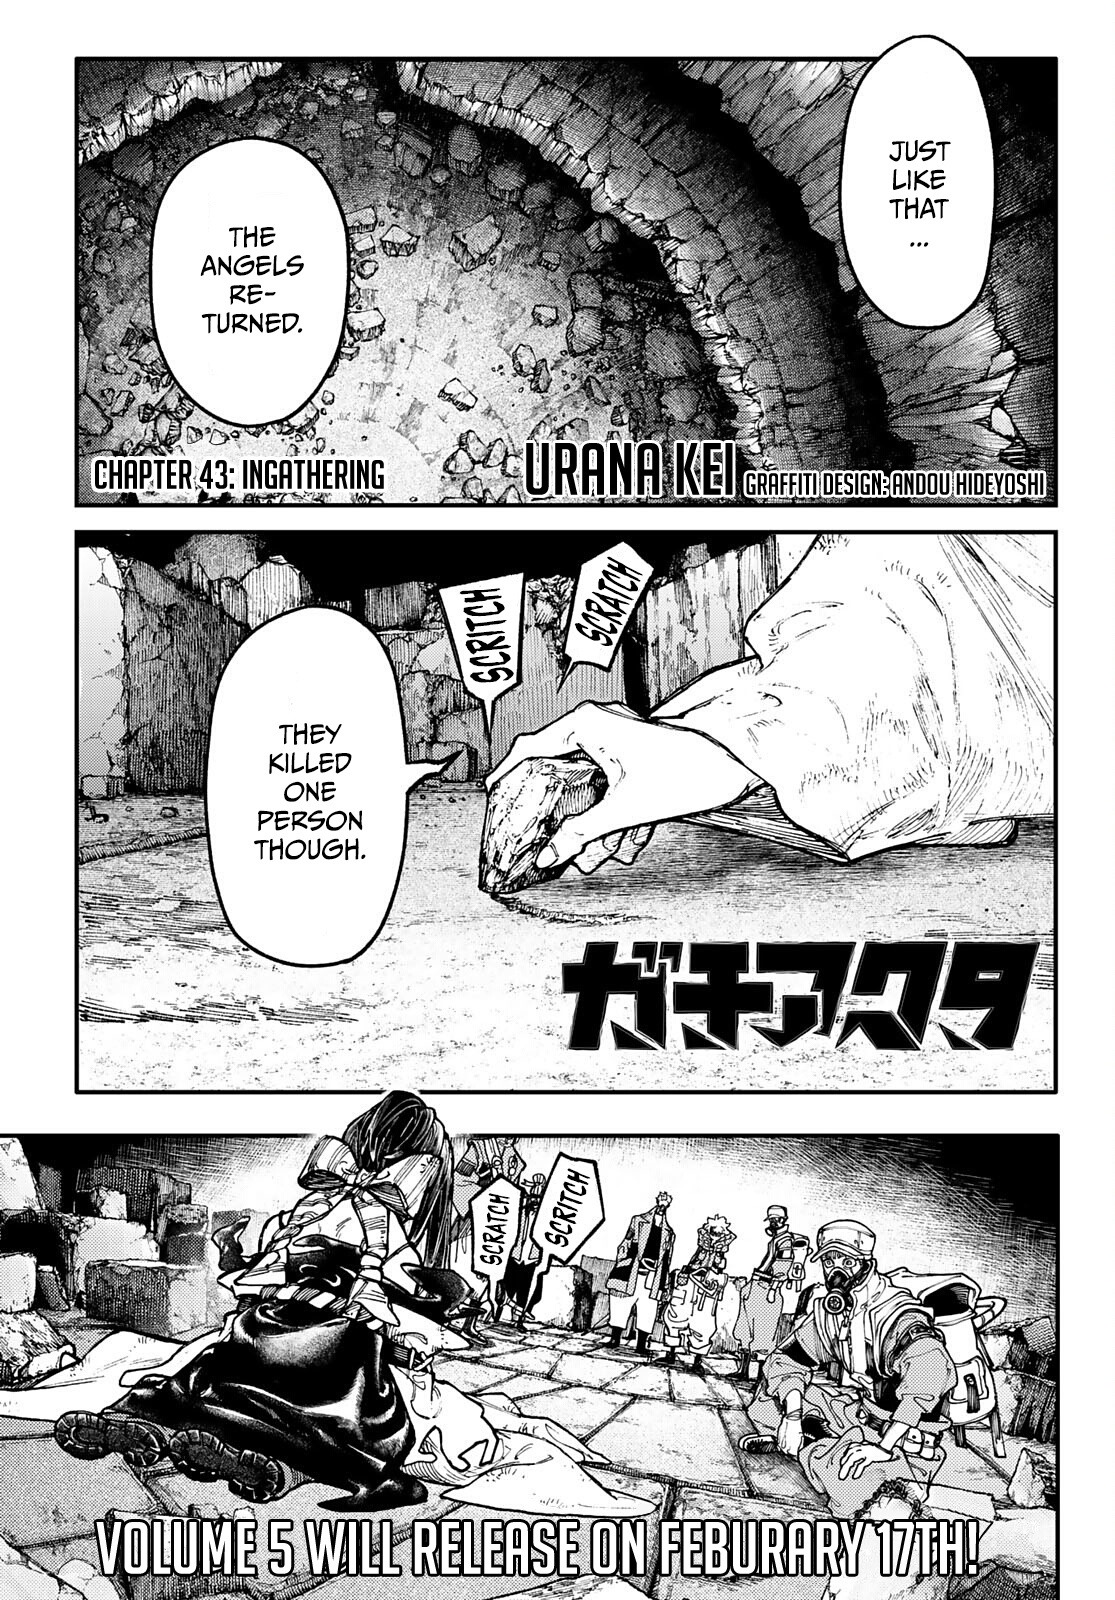 Gachiakuta - Page 1